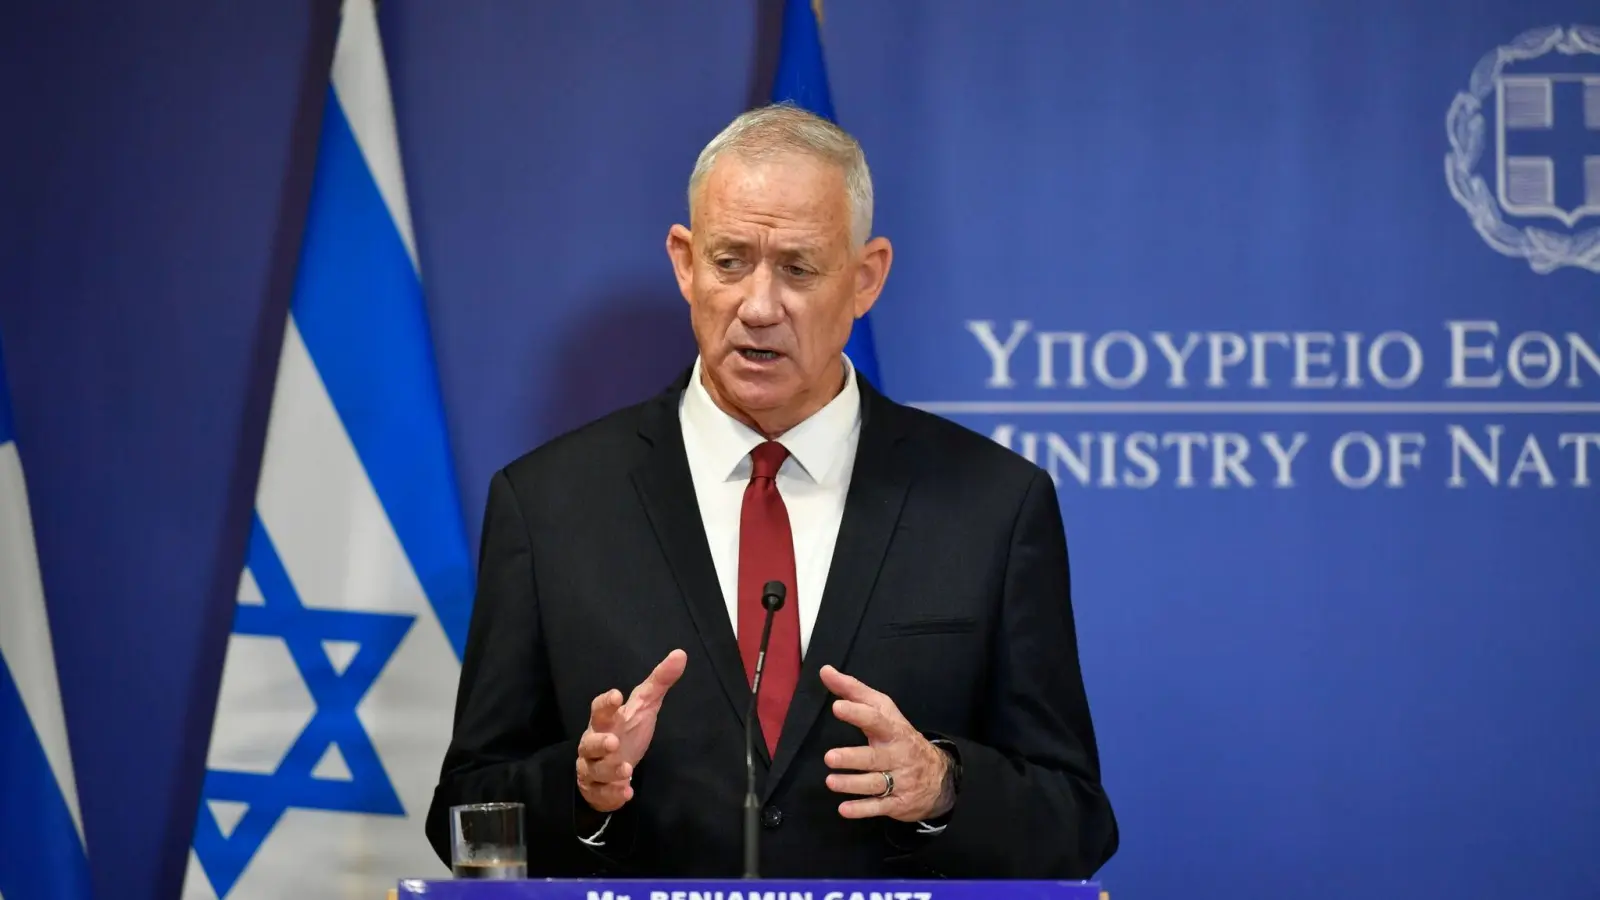 Israels Verteidigungsminister Benny Gantz während einer Pressekonferenz. (Foto: Michael Varaklas/AP/dpa)